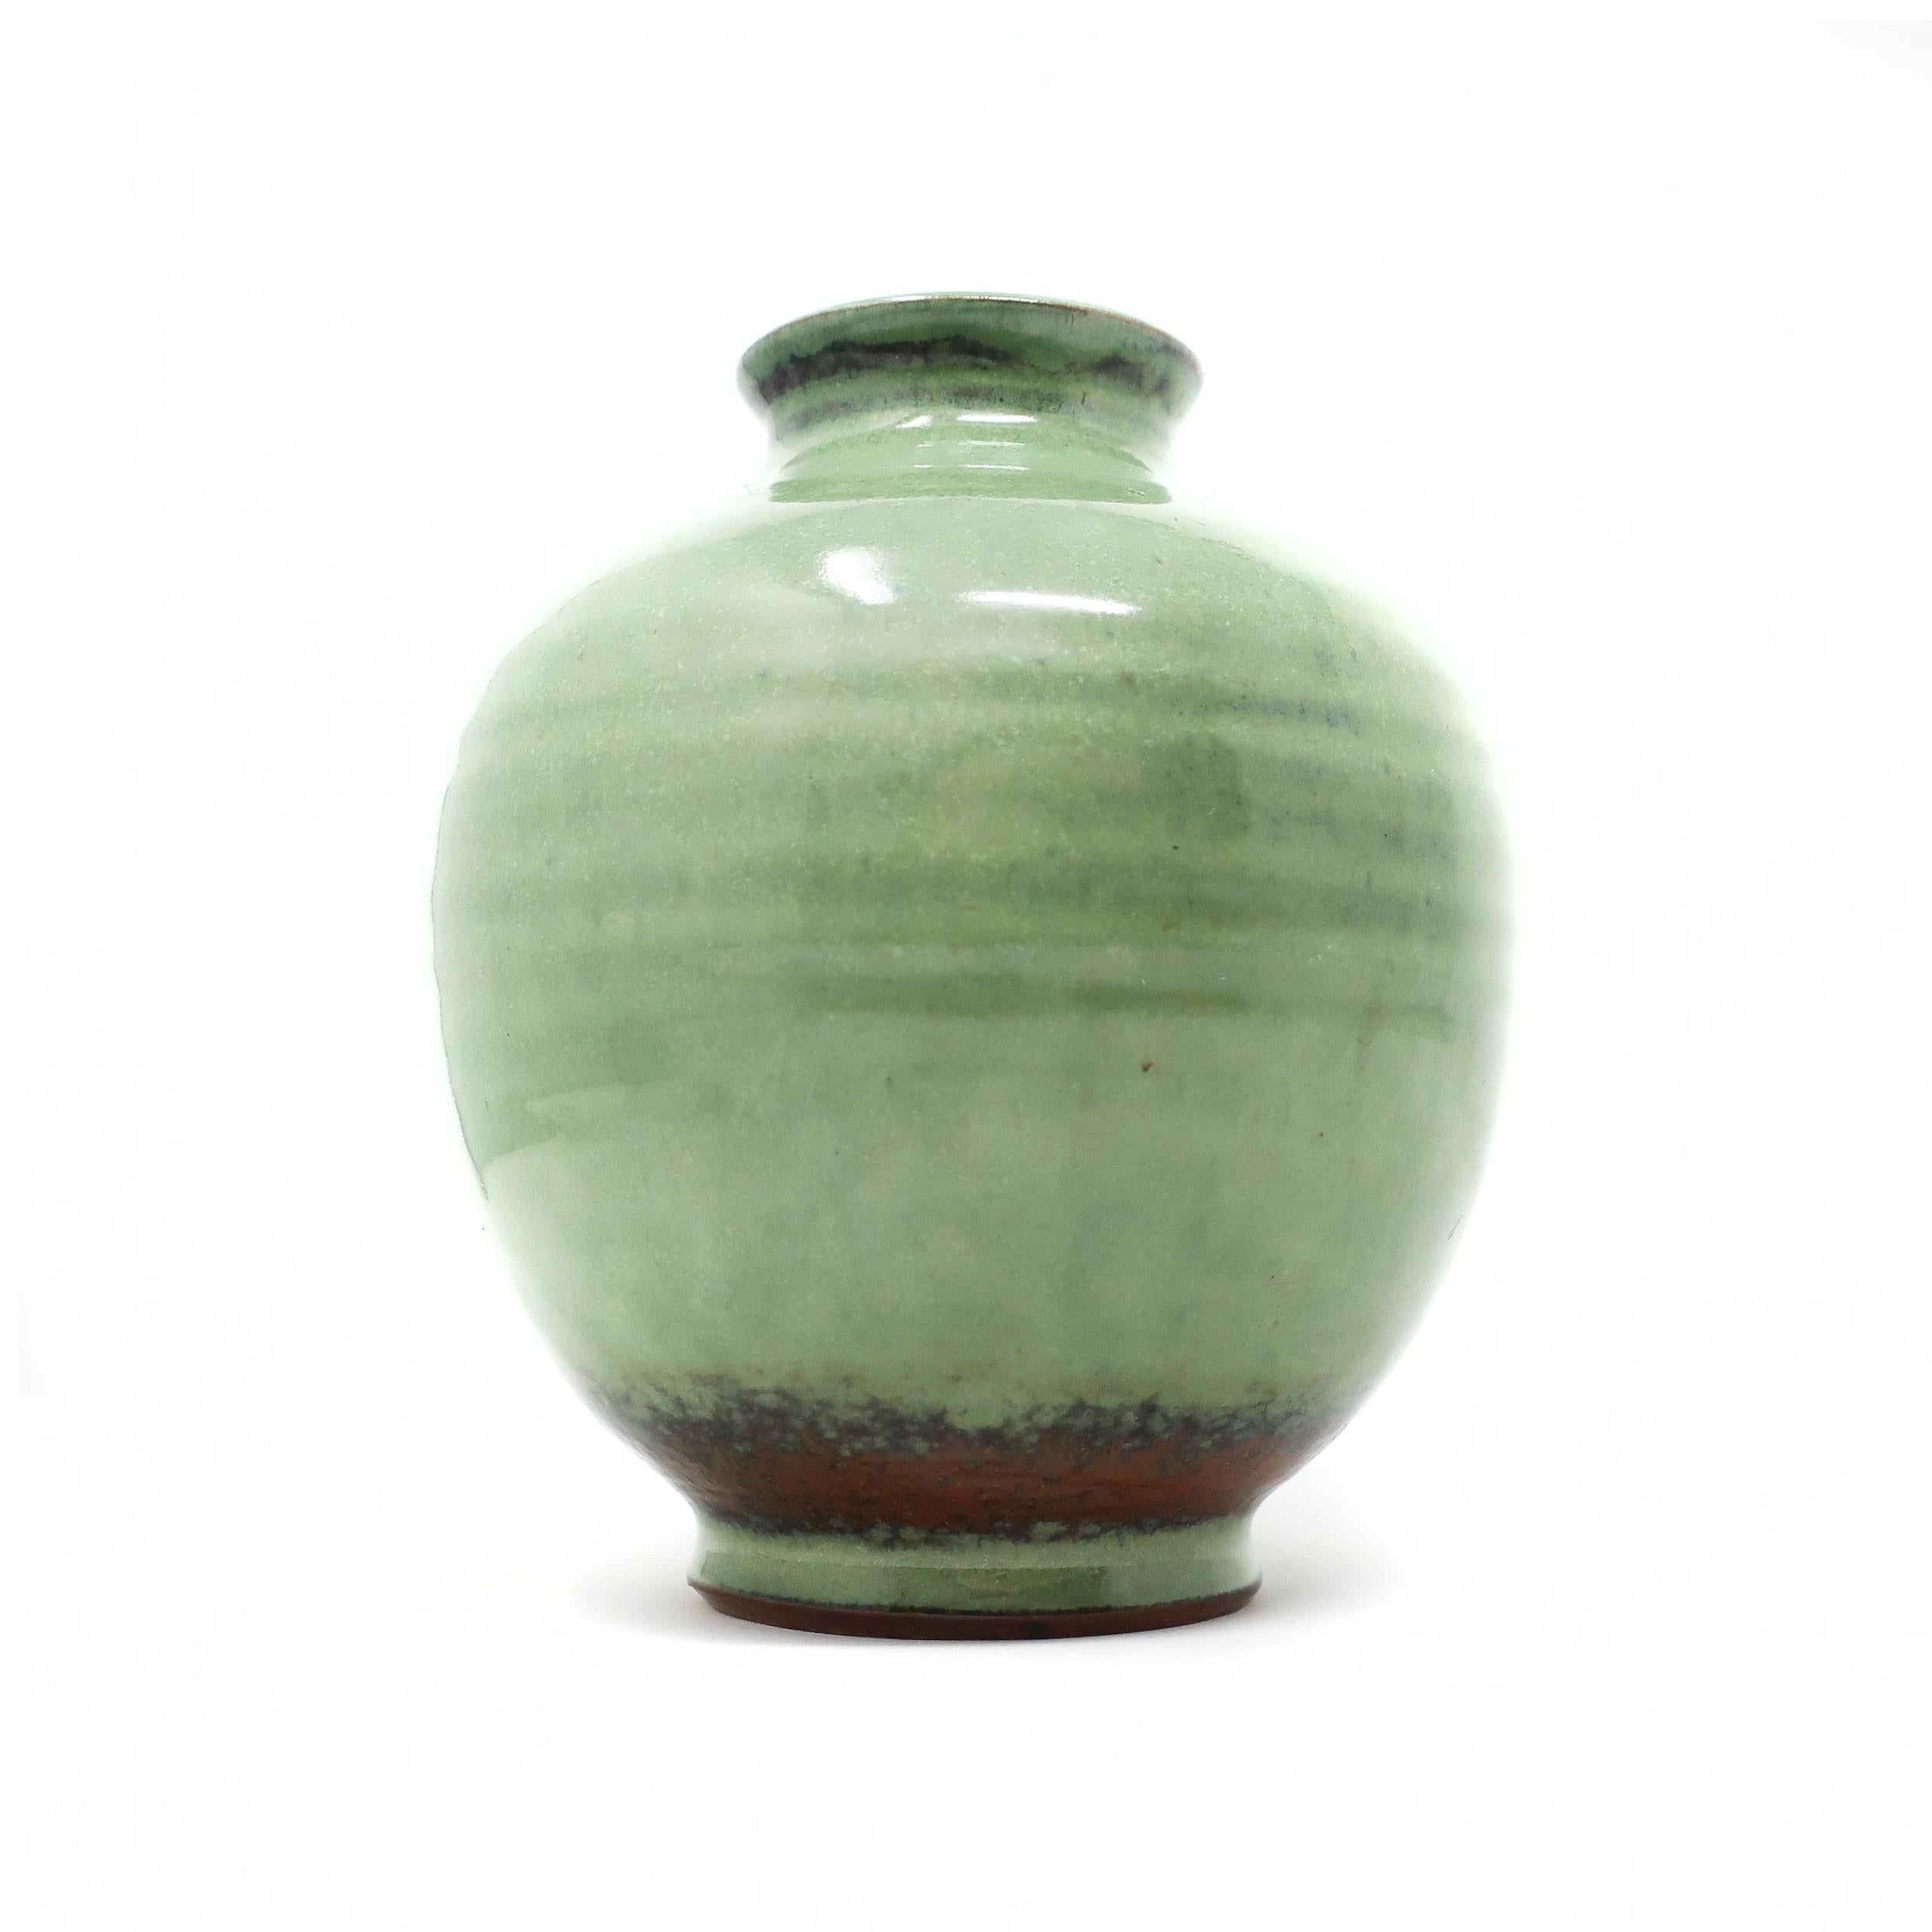 Un joli vase en céramique céladon ou greenware par Edwin & Mary Scheier, l'un des couples les plus connus à avoir jamais travaillé dans la poterie. Edwin (1910-2008) et Mary (1908-2007) ont commencé à créer ensemble dans les années 1930. Cette pièce